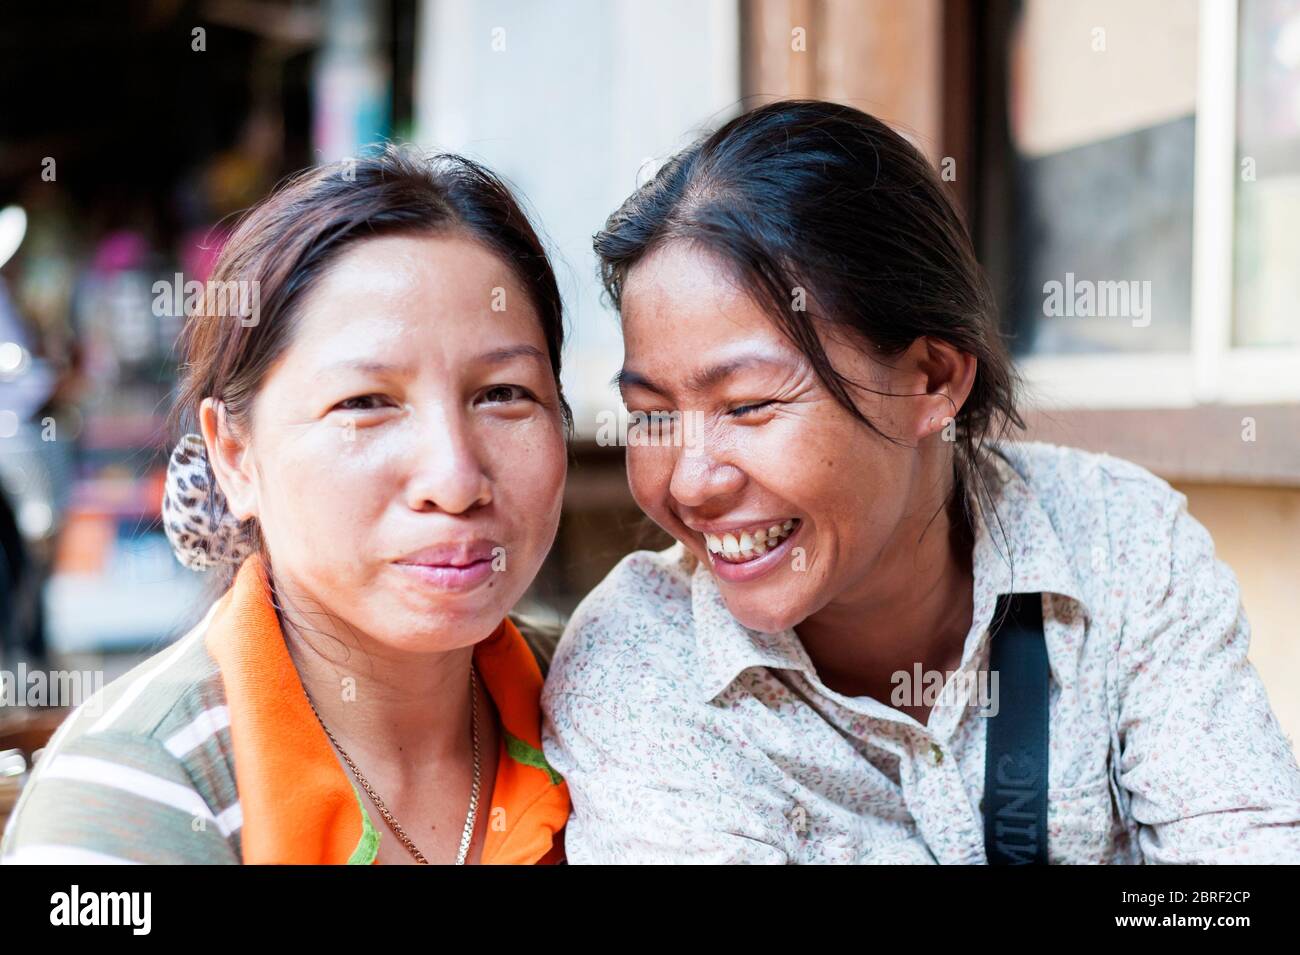 Zwei kambodschanische Schwestern lachen zusammen auf dem Psar Nat Markt, Battambang, Kambodscha, Südostasien Stockfoto